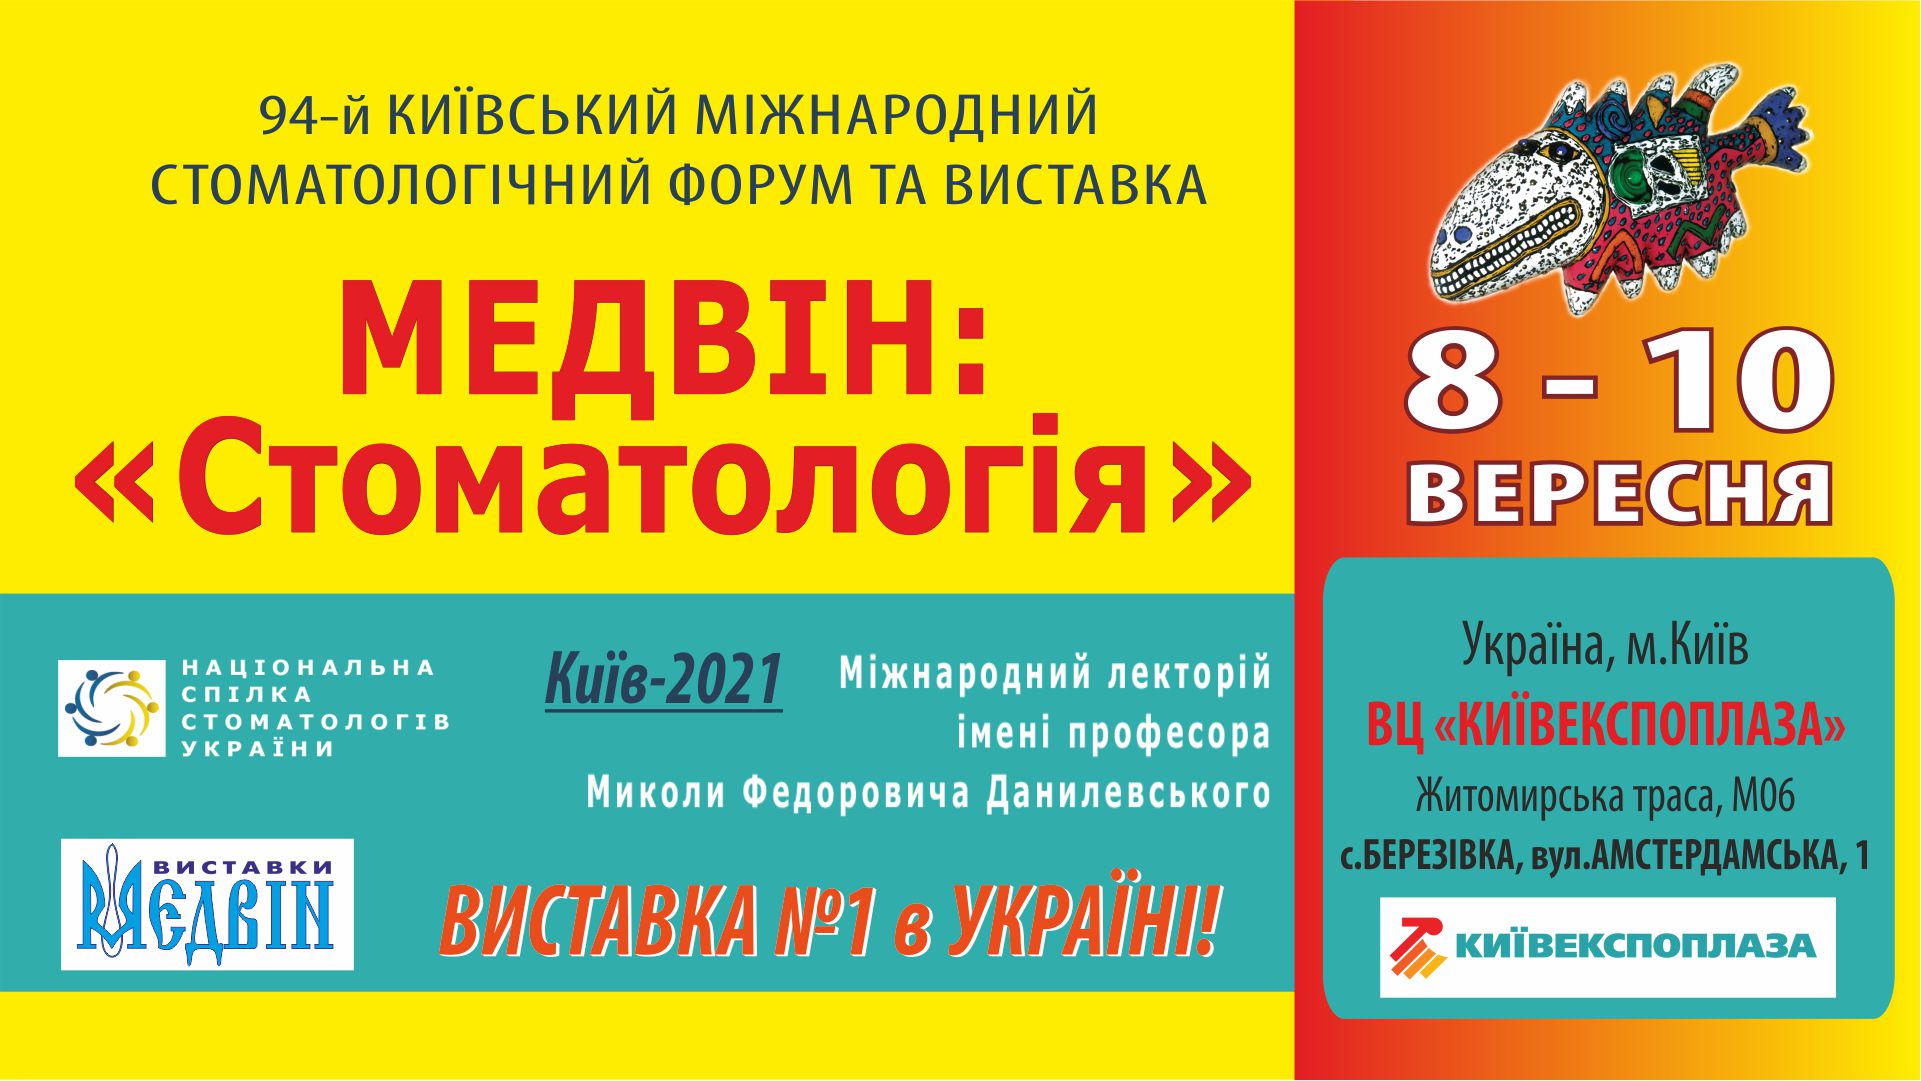 Квиток на виставку "МЕДВІН: Стоматологія" - КИЇВ, 8-10 вересня 2021